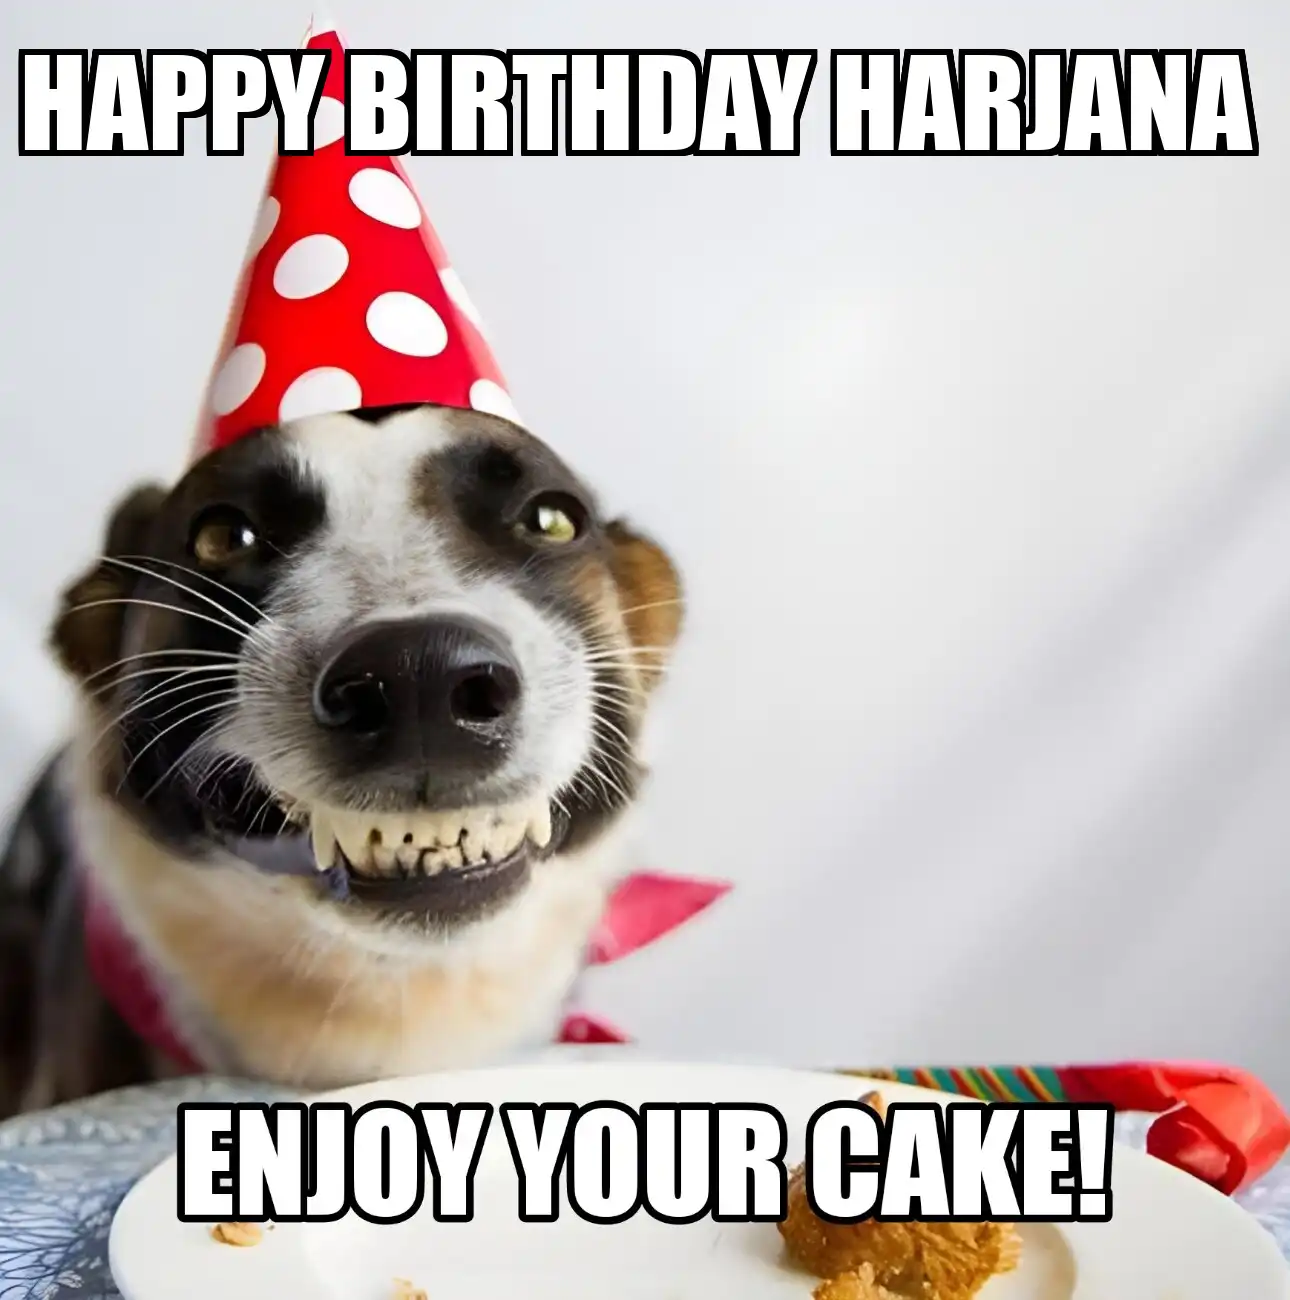 Happy Birthday Harjana Enjoy Your Cake Dog Meme